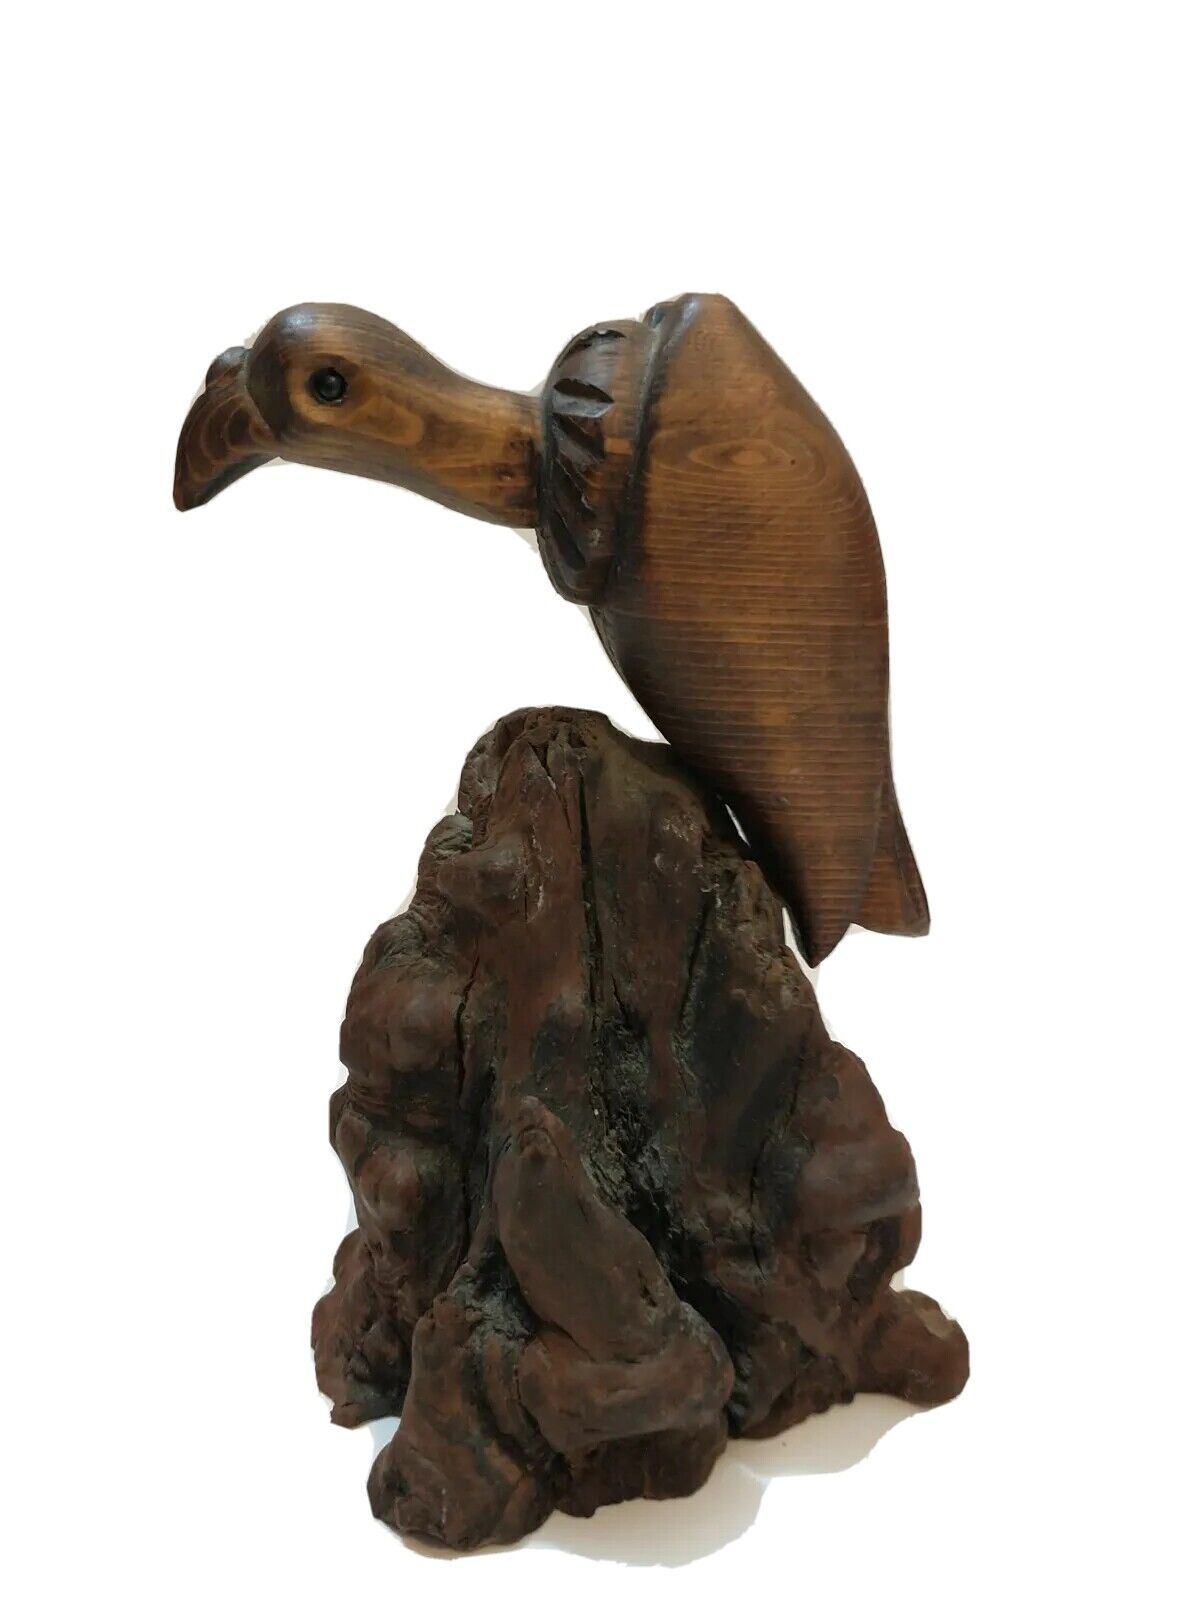 John Nelson Hand Carved Vulture Bird Driftwood Wood Sculpture Vintage Folk Art 